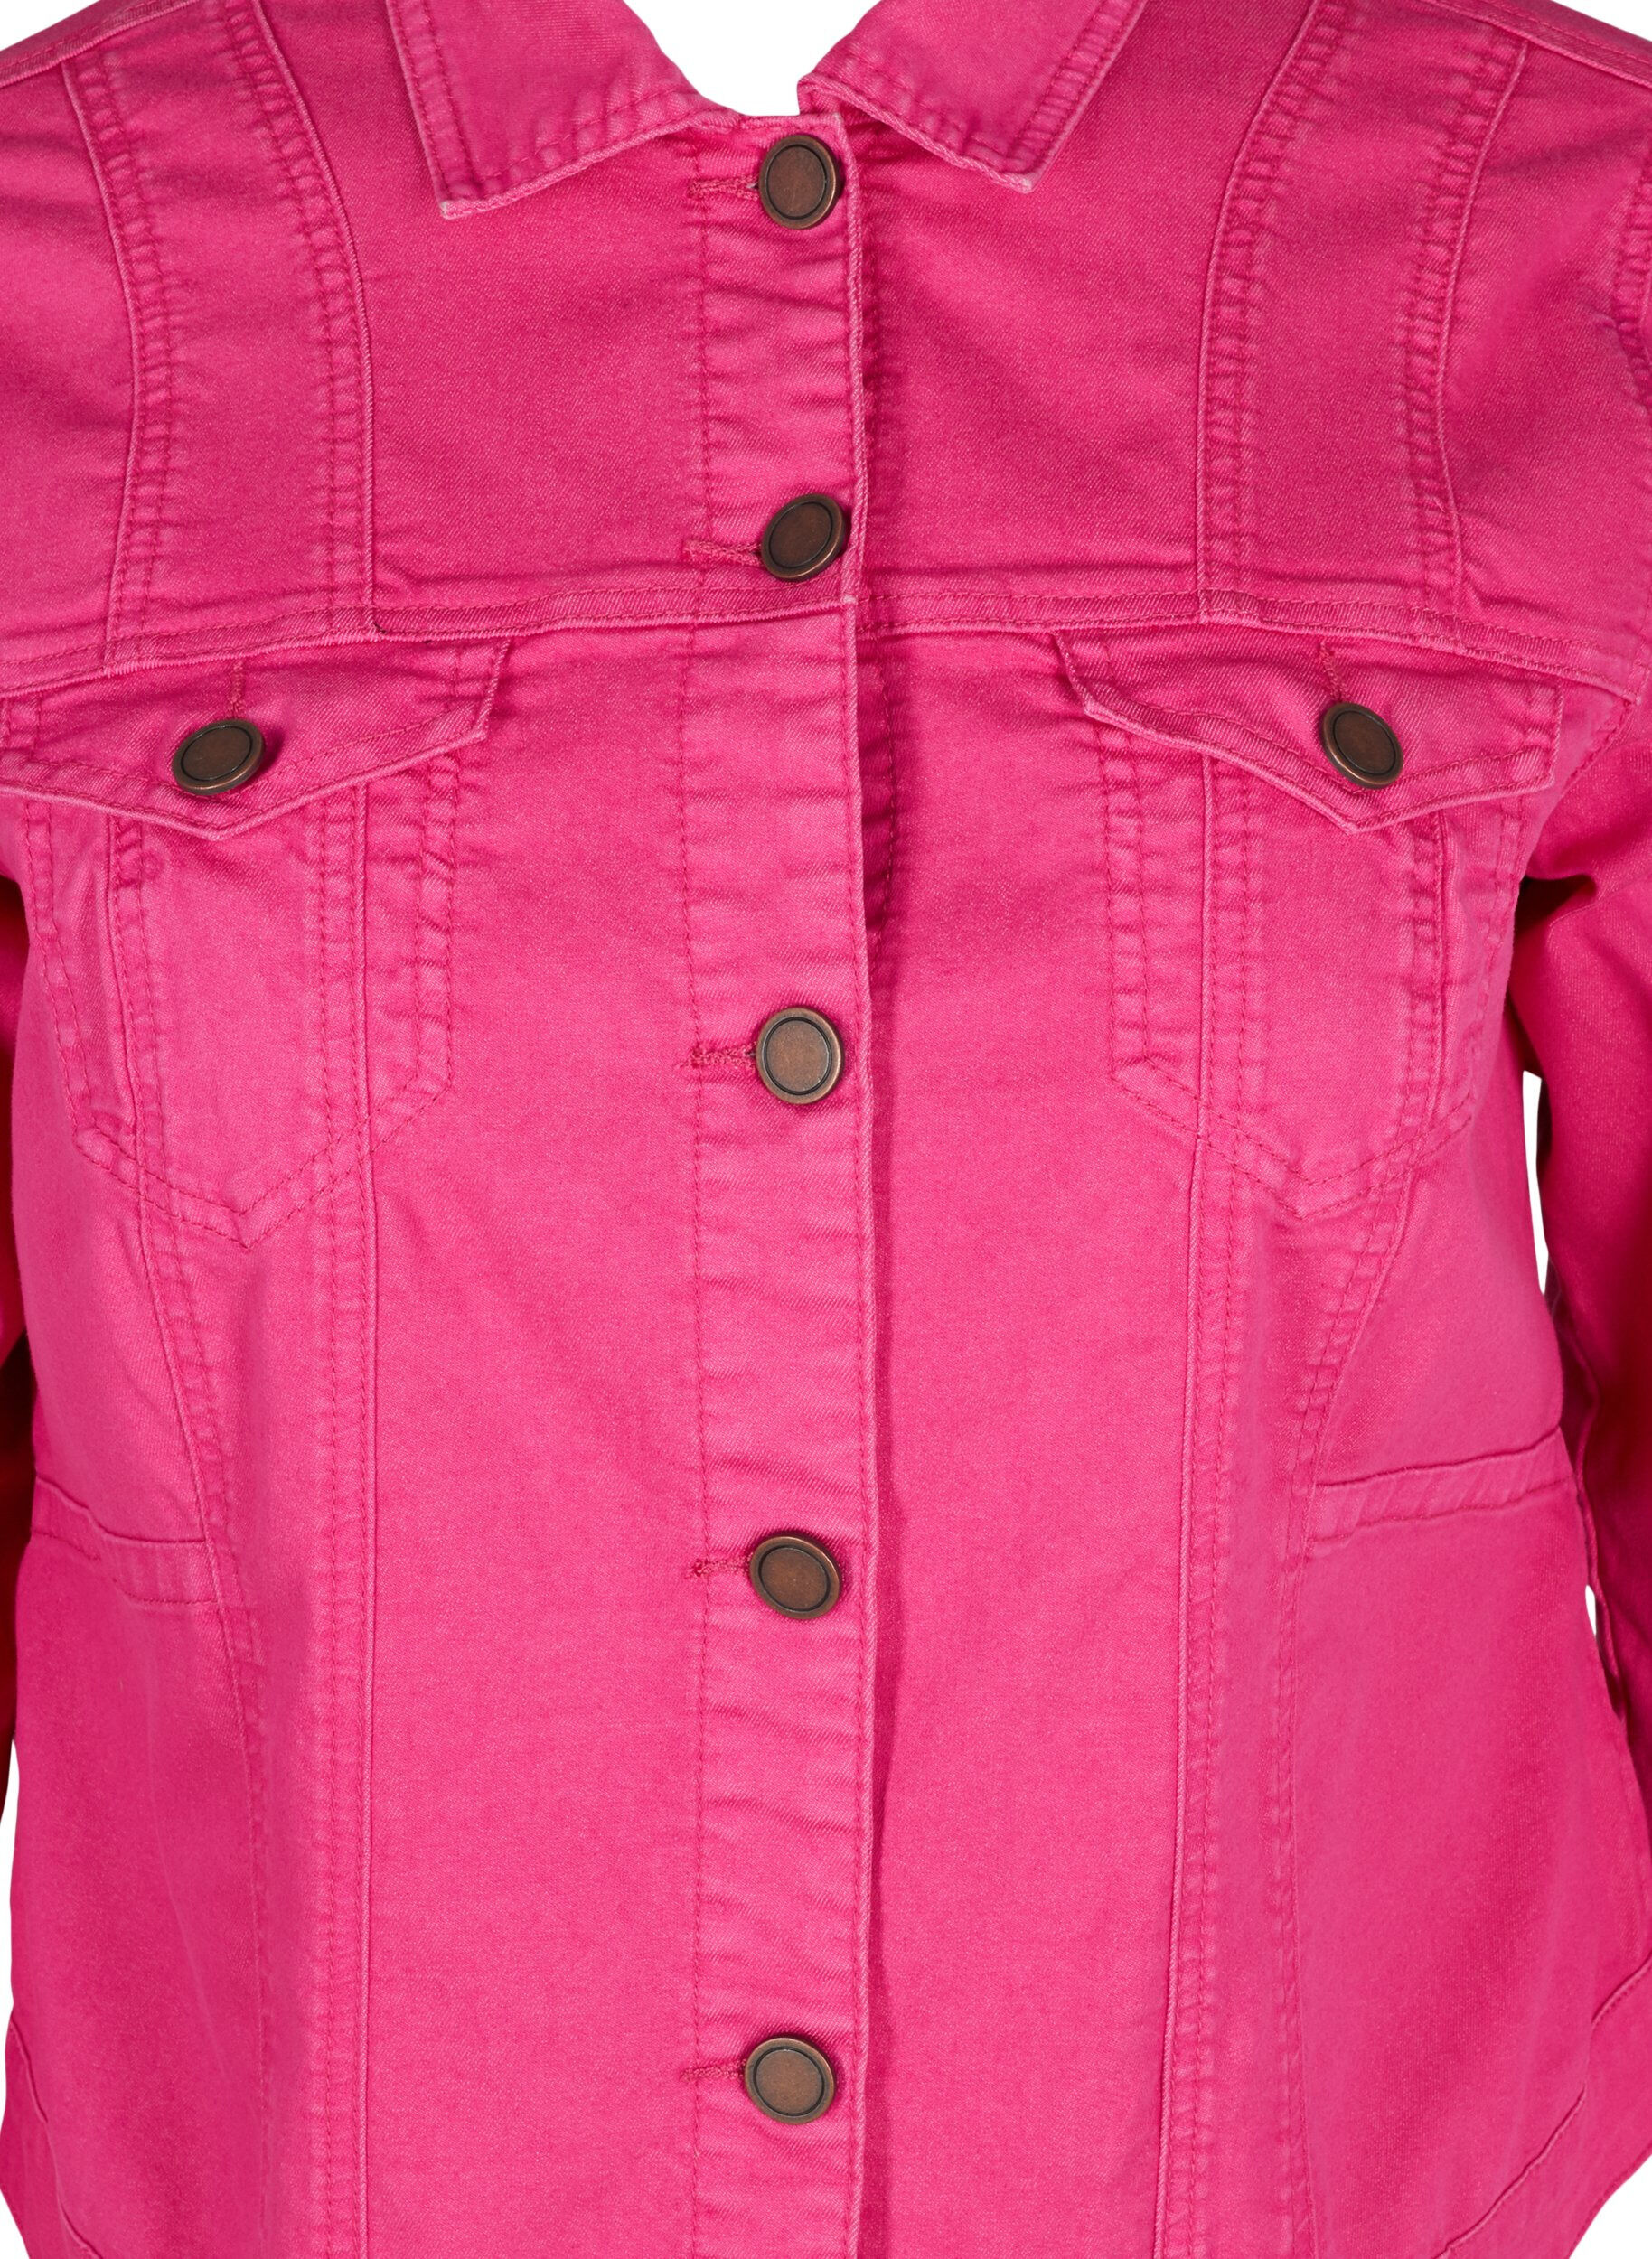 Coloured Denim Jacket, Coats & Jackets | FatFace.com